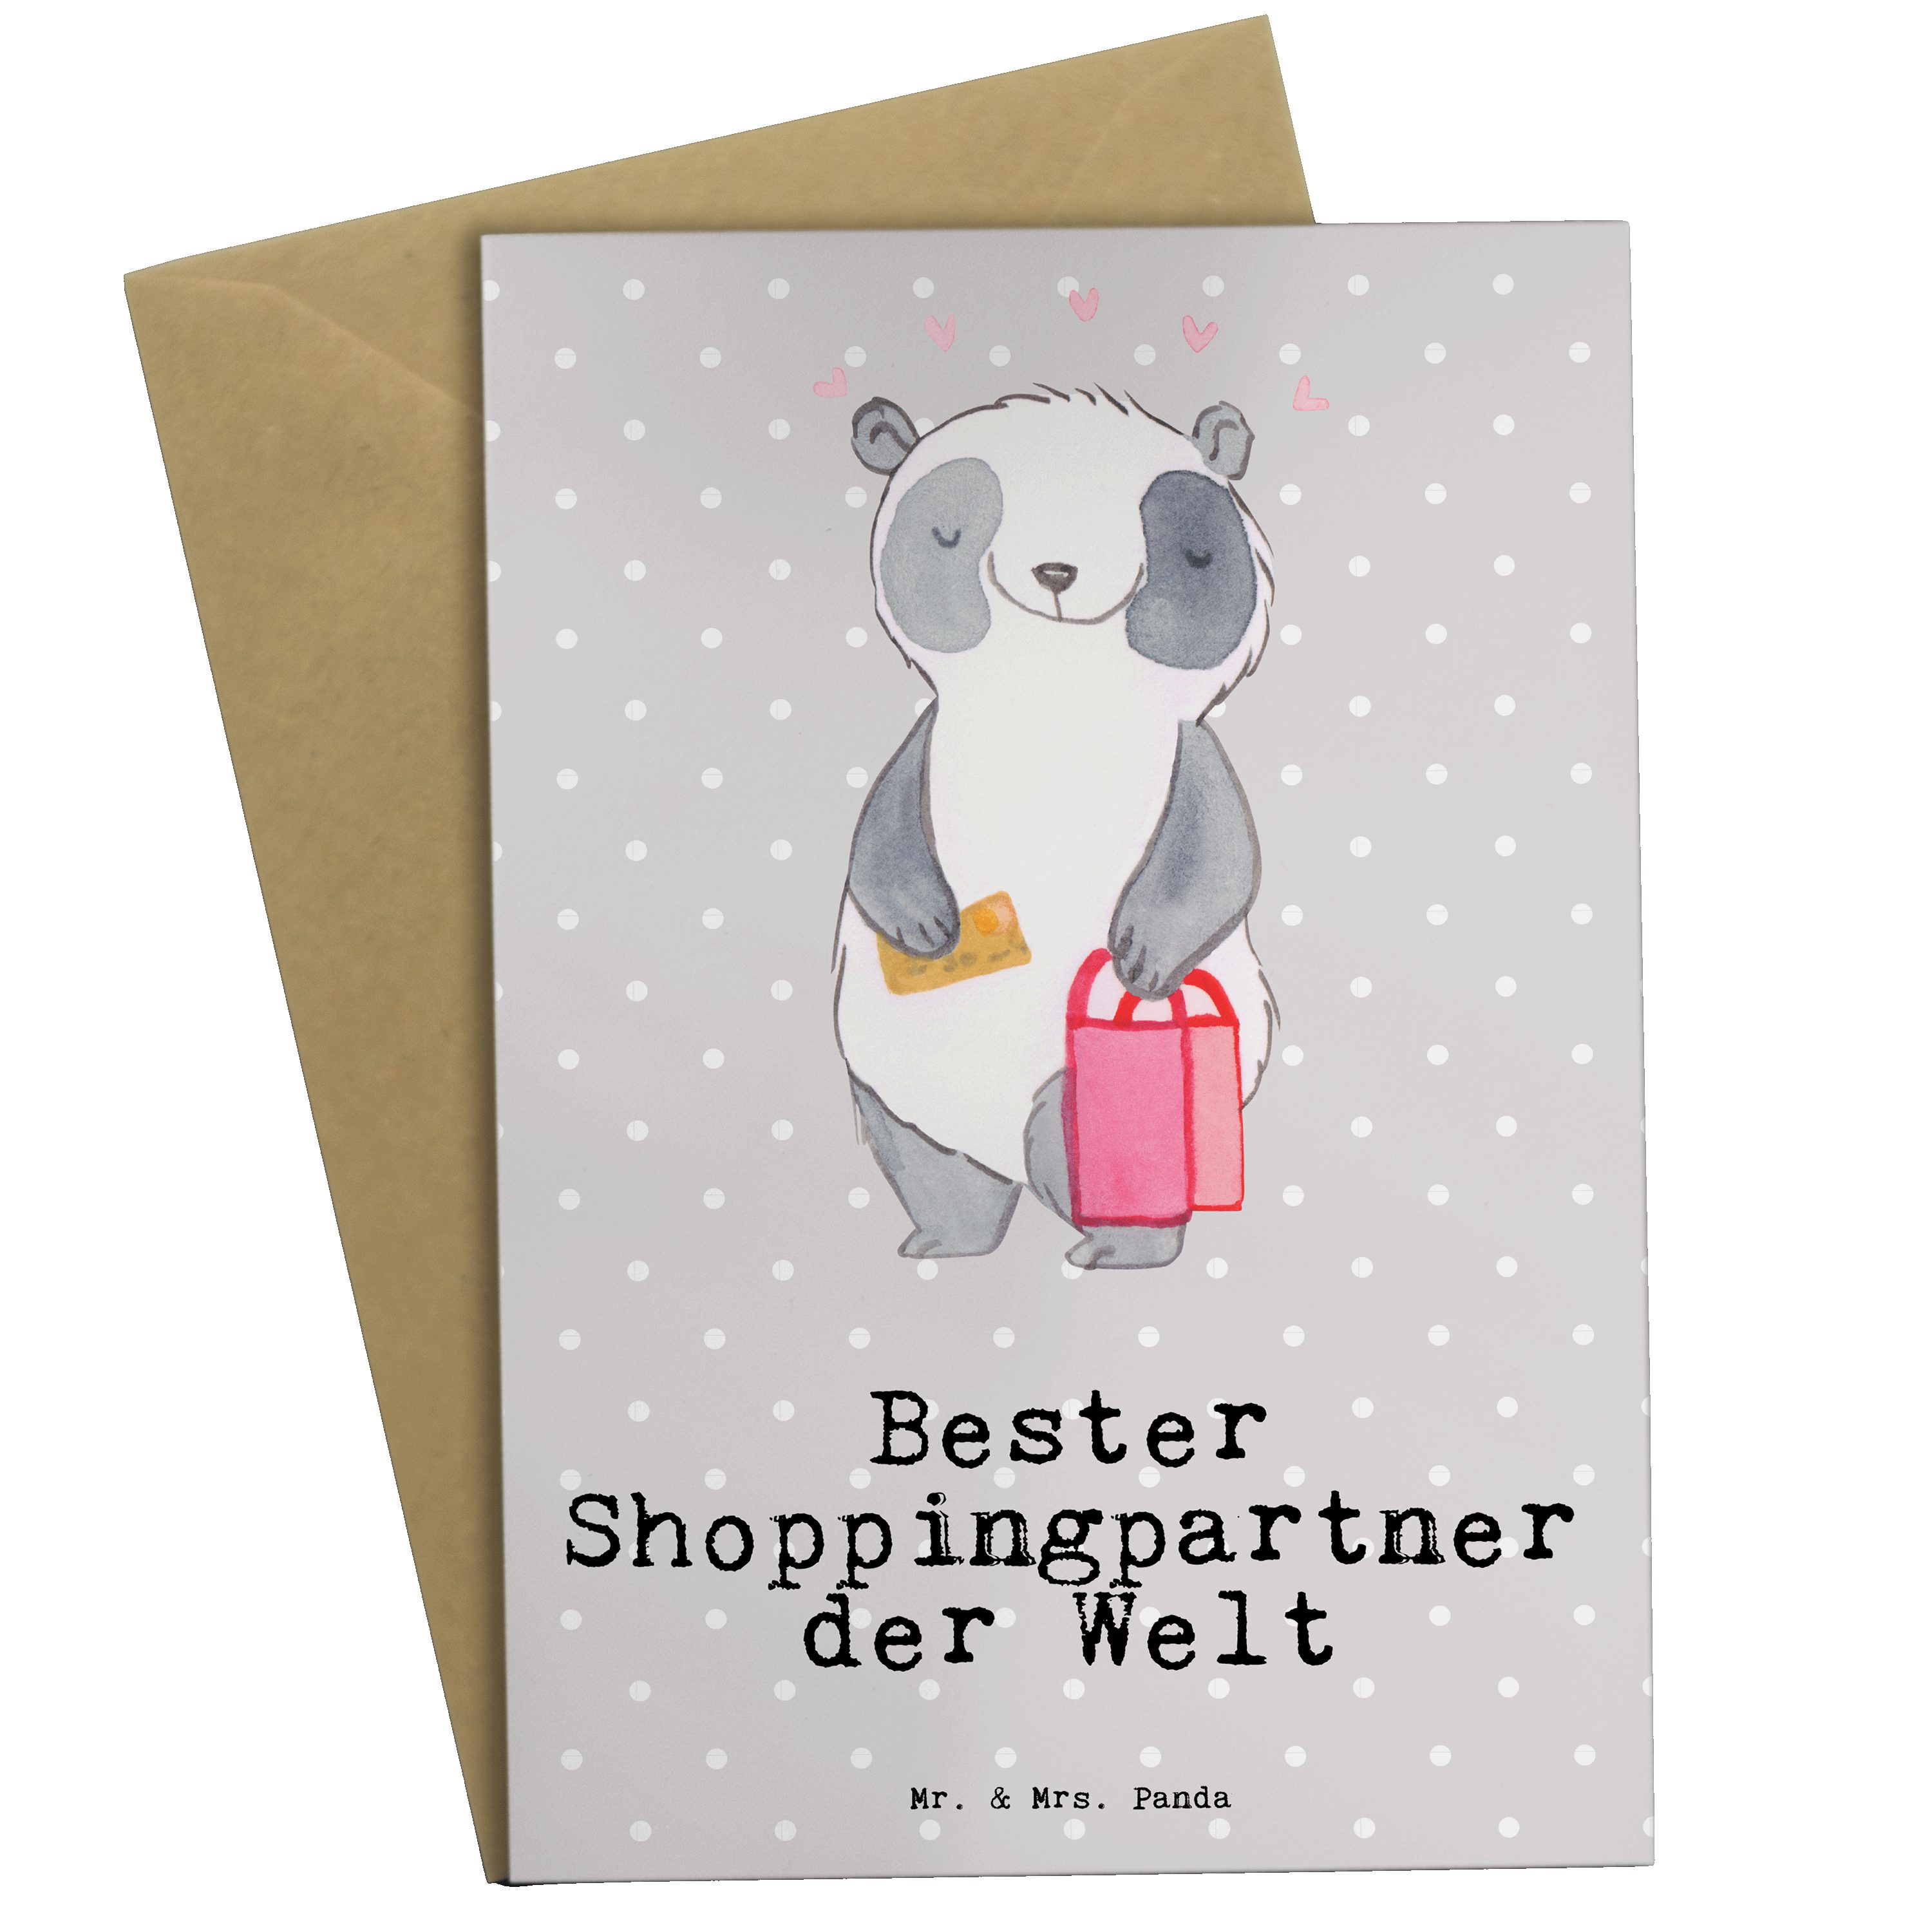 Mr. & Mrs. Panda Grußkarte Panda Bester Shoppingpartner der Welt - Grau Pastell - Geschenk, Gesc